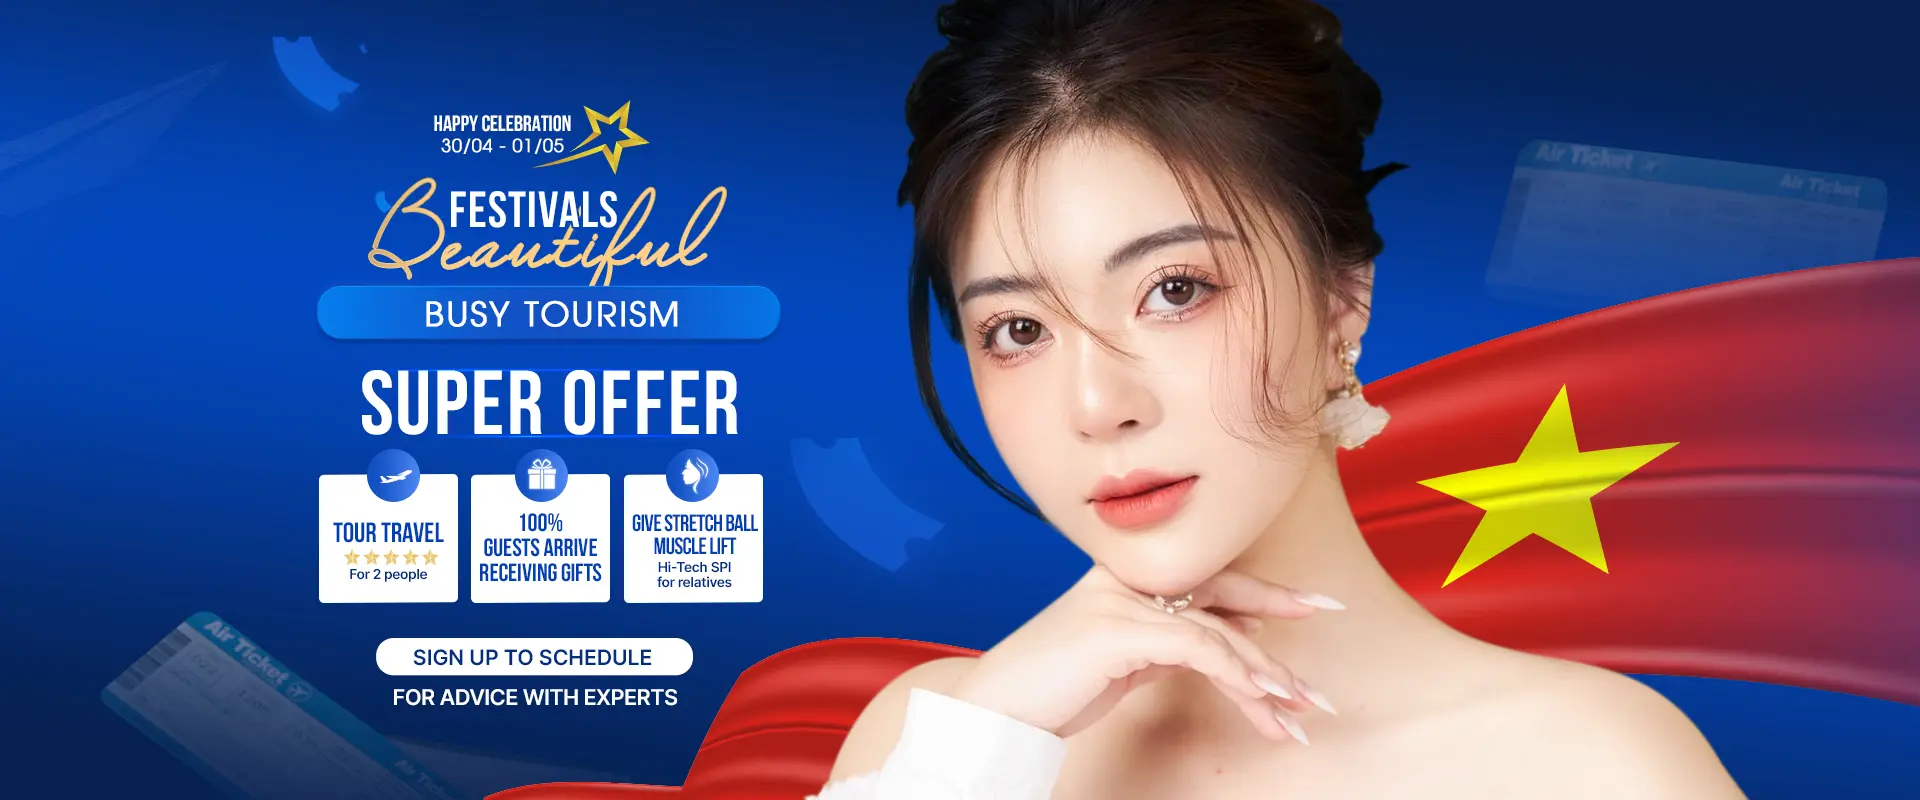 Special offer for April 30 - May 1 April promotion program banner